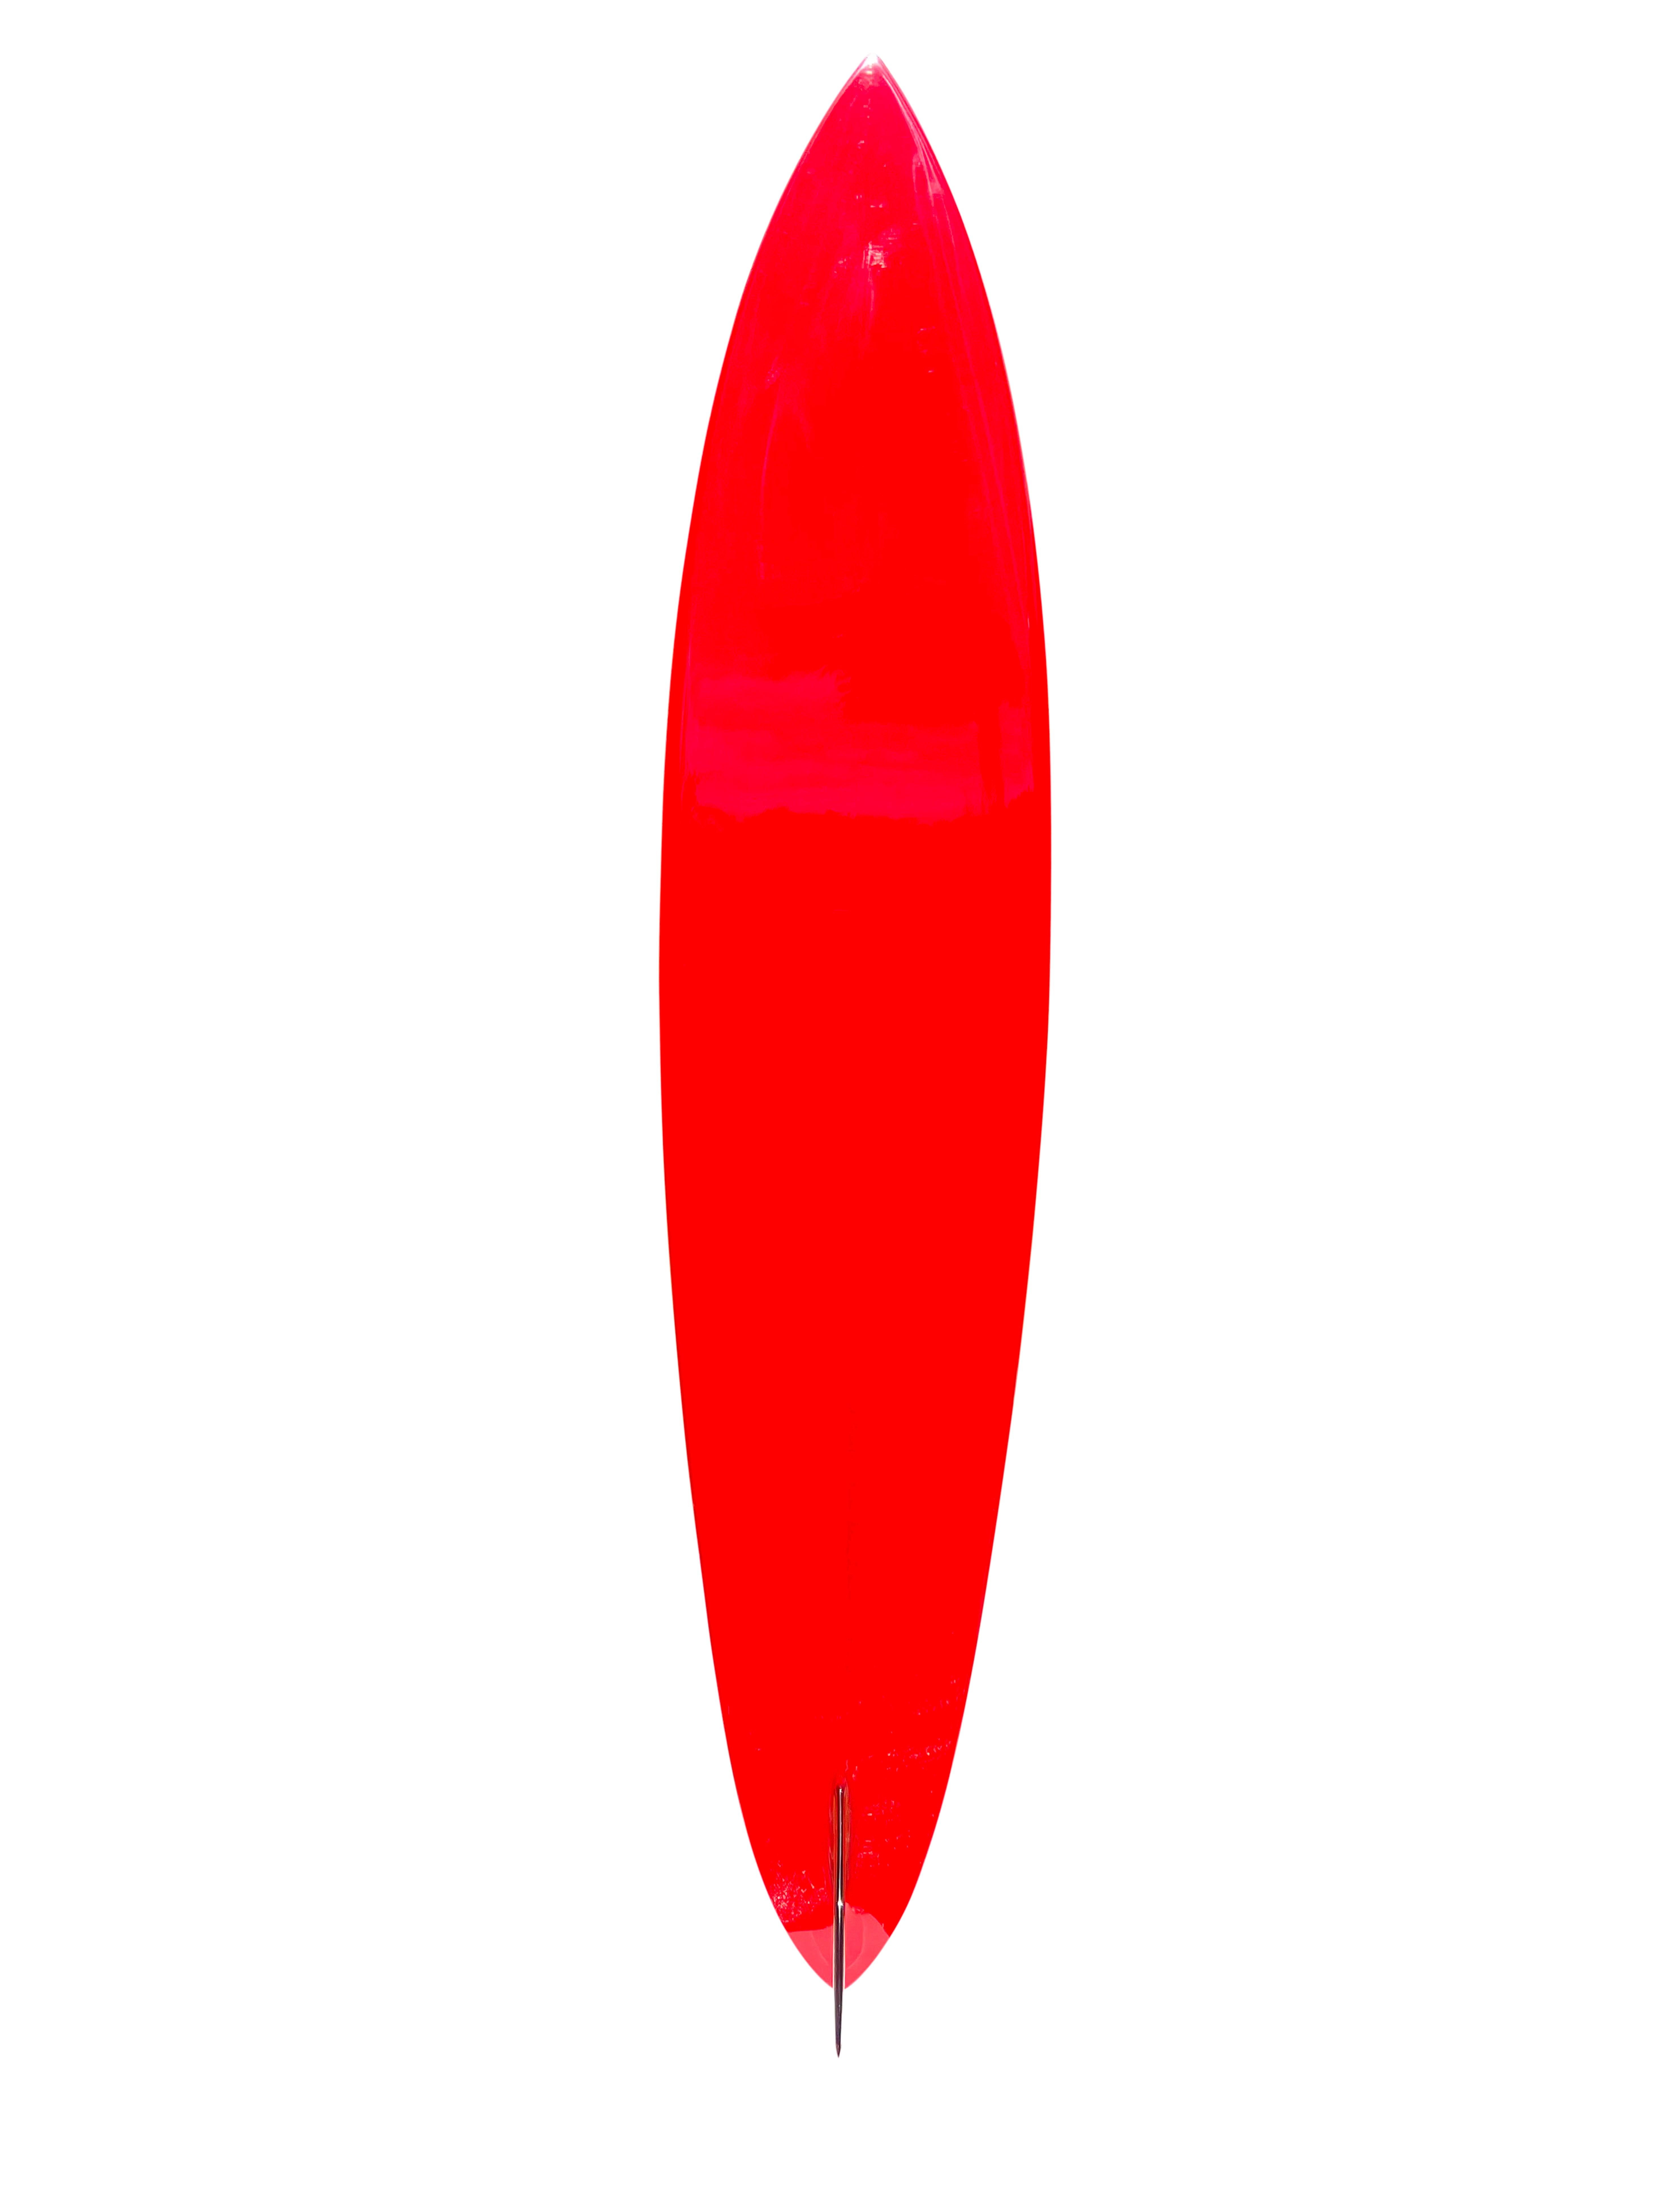 1968 Replik Lahaina Clinton Blears Modell Surfbrett. Geprägt von dem verstorbenen Dick Brewer (1936-2022). Mit dem sehr begrenzten Brewer-Lahaina-Plumeria-Logo, das 1968 für kurze Zeit verwendet wurde, als sich das Geschäft von Dick Brewer in